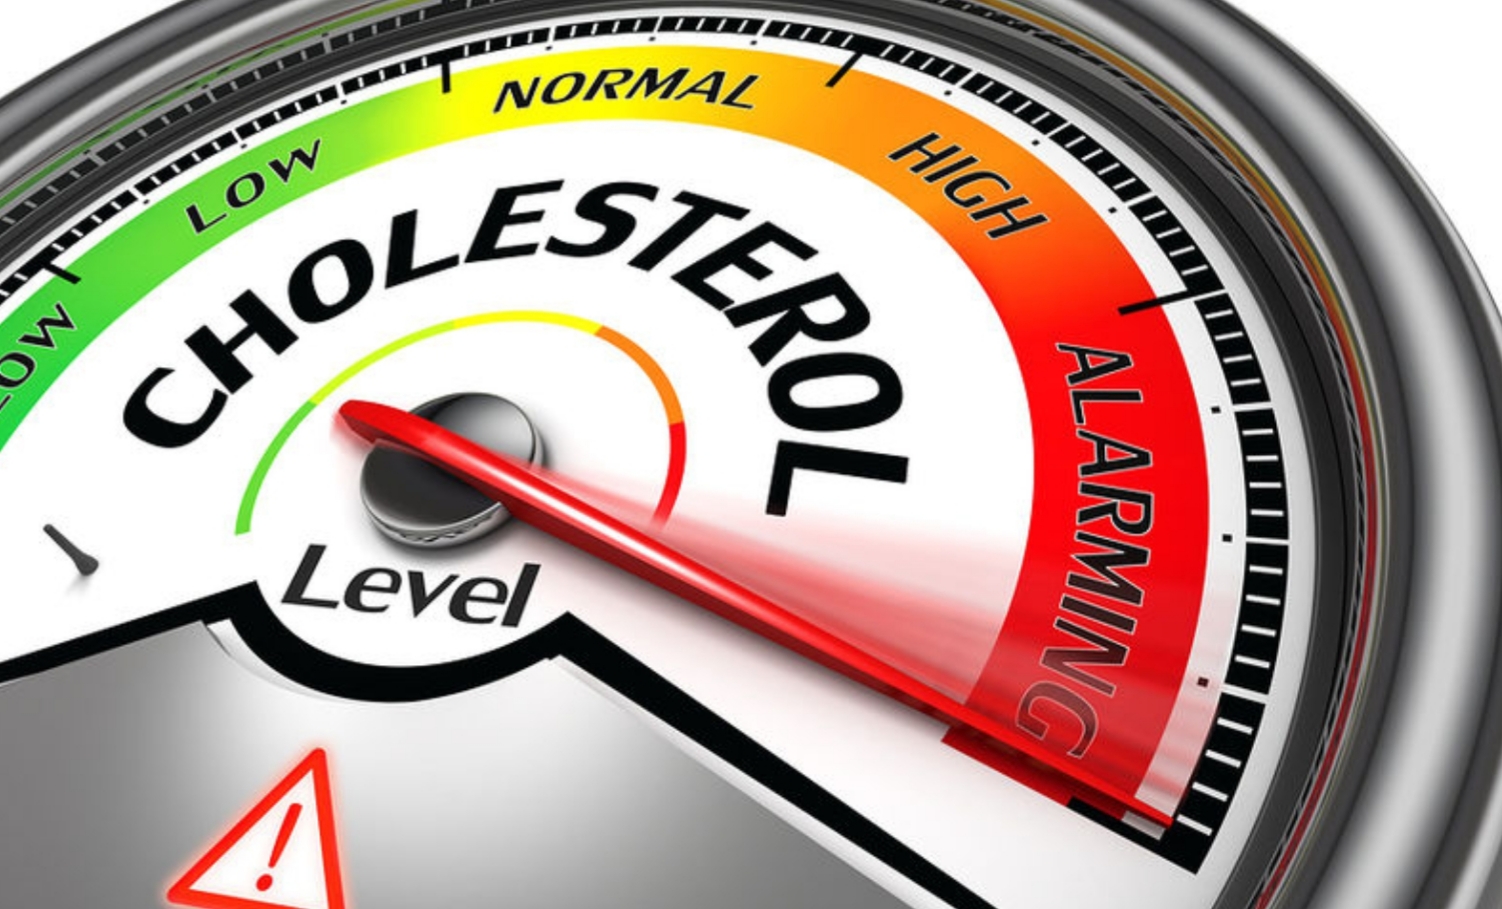 Χοληστερίνη | Υπάρχουν προειδοποιητικά μηνύματα;